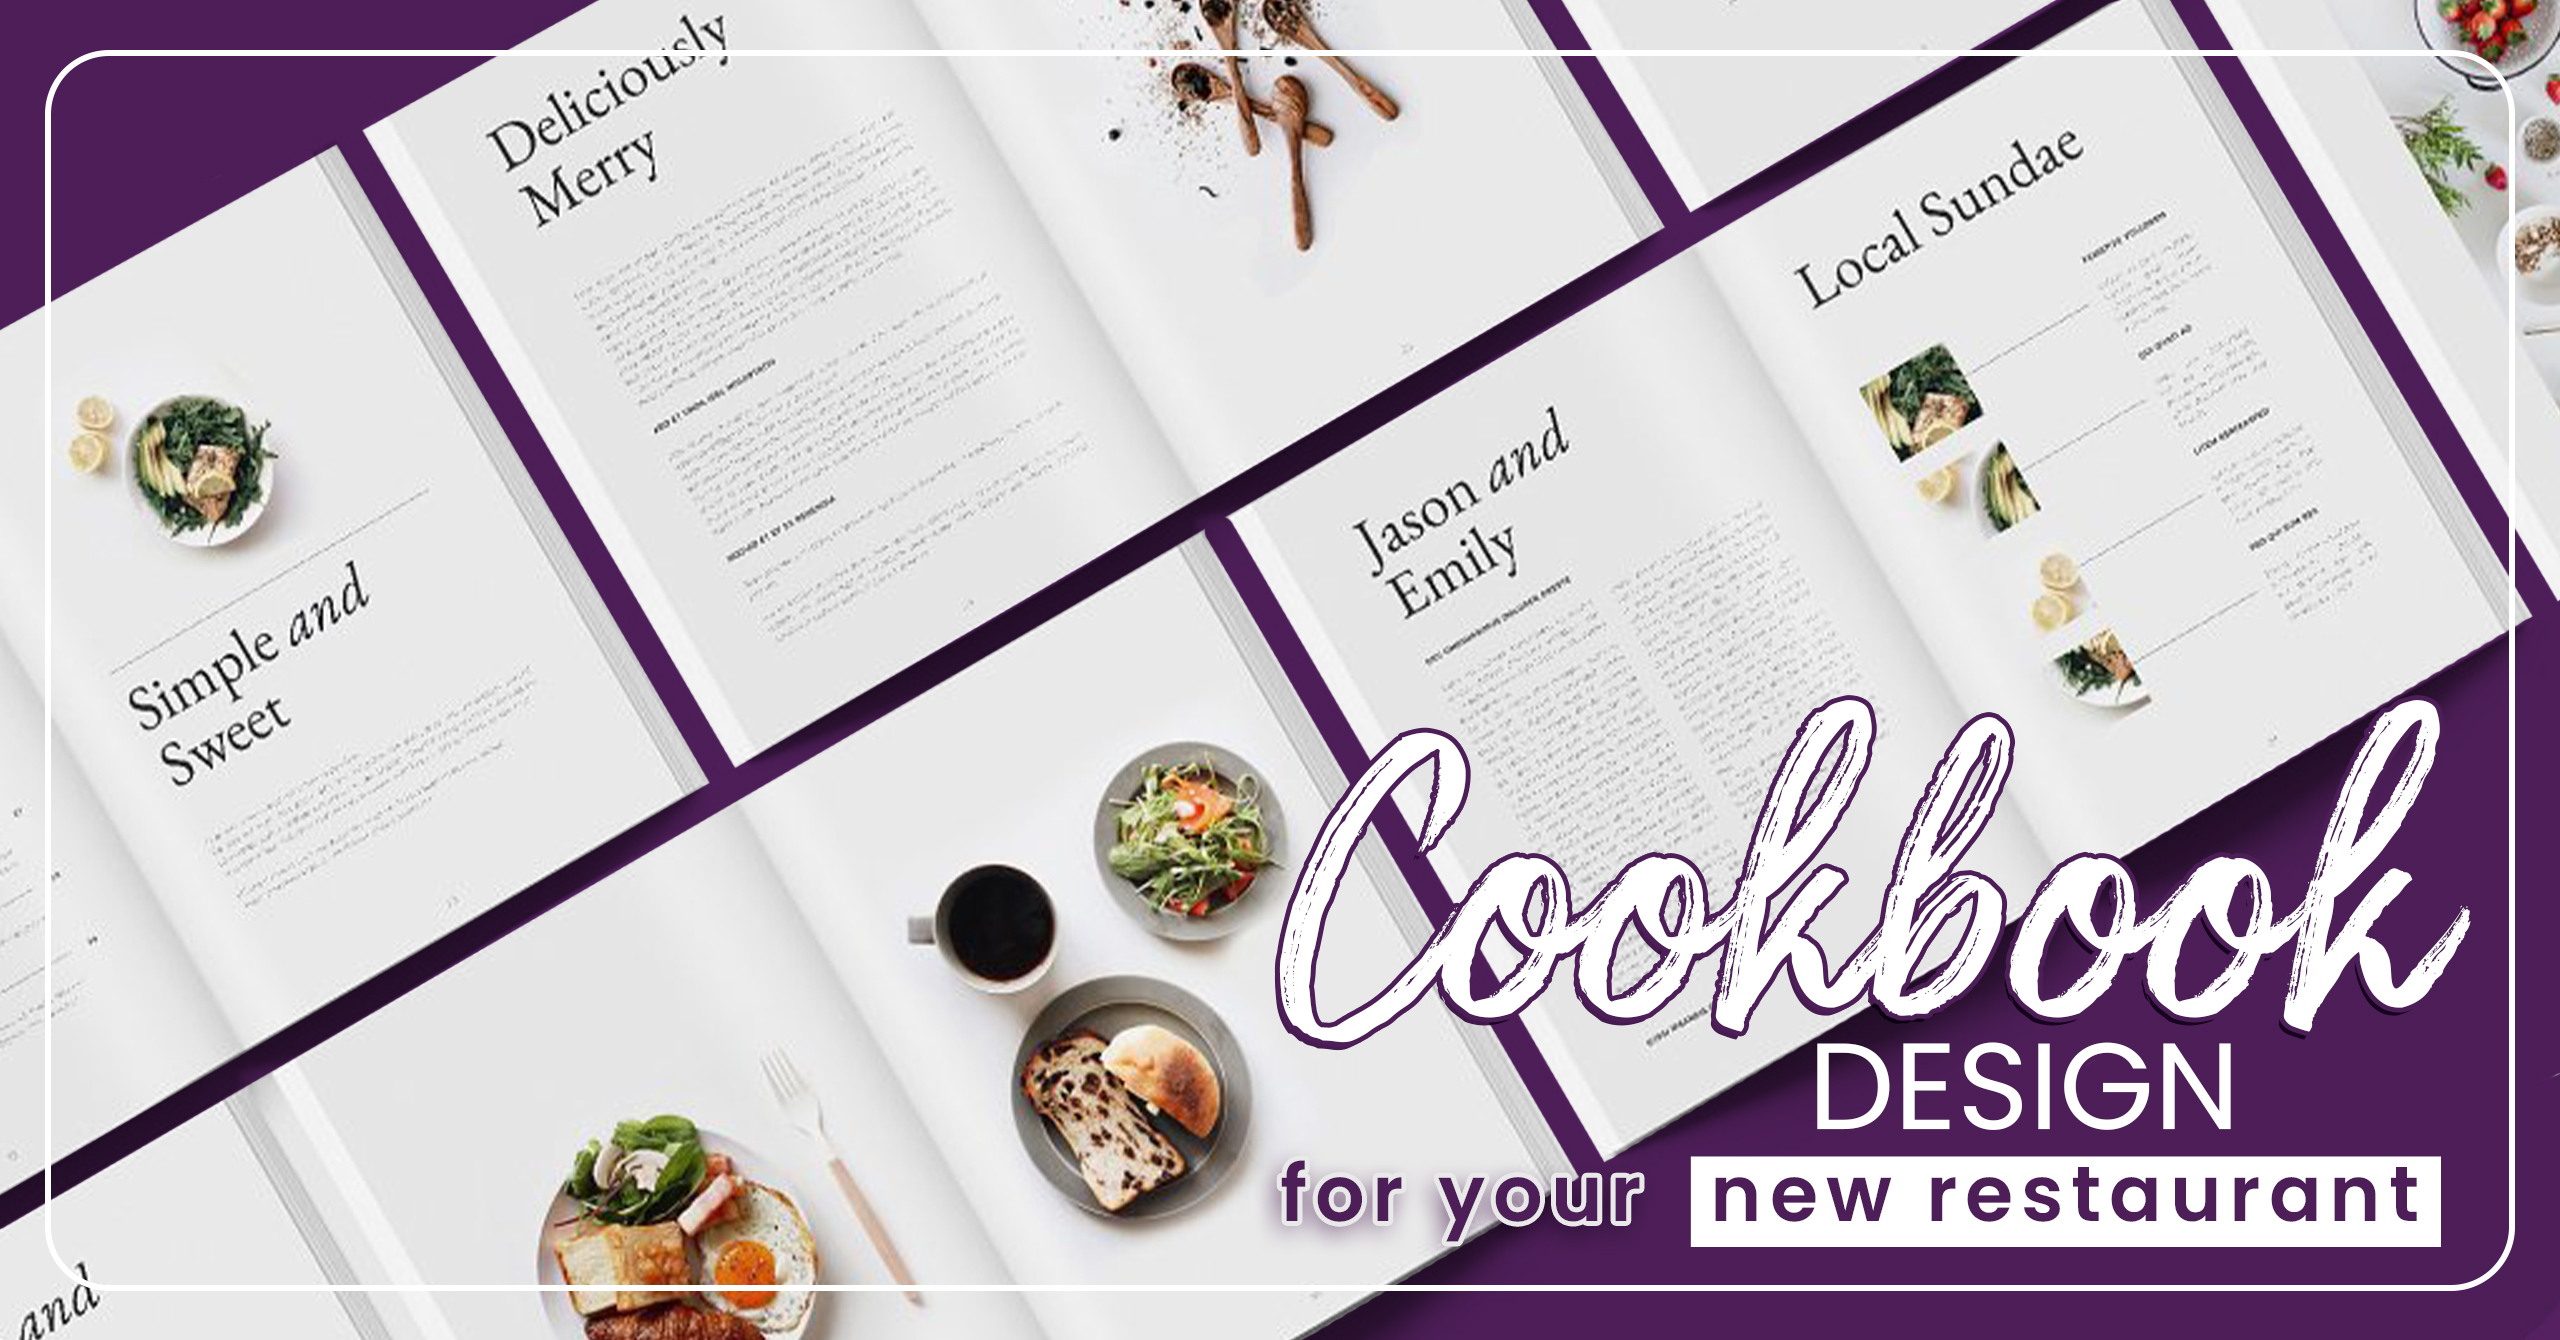 Cookbook design ideas